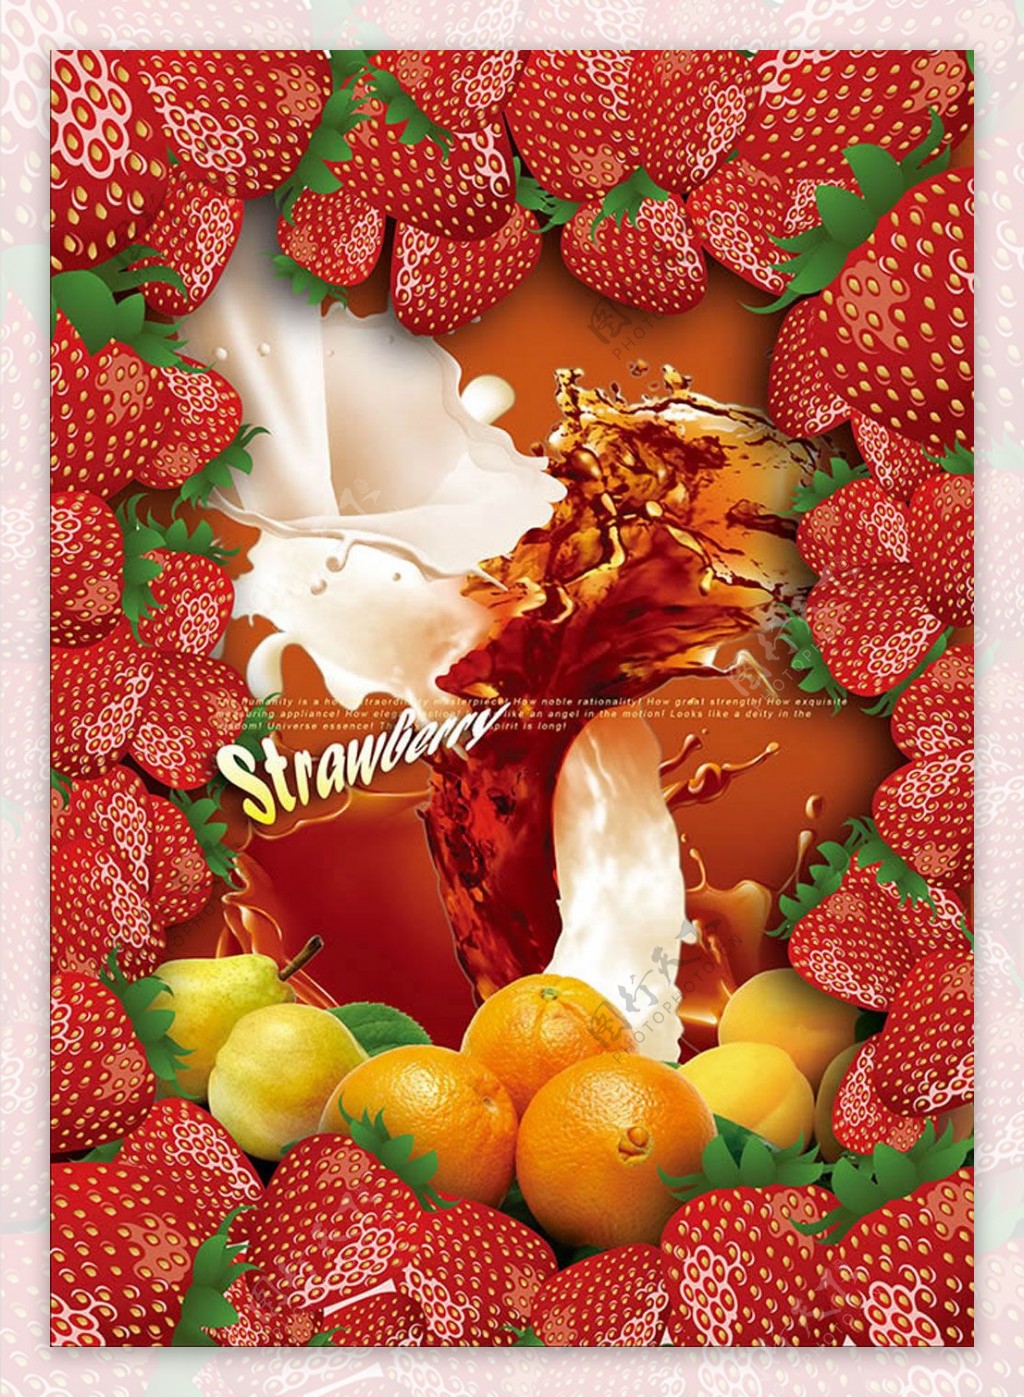 创意草莓桔子饮料海报设计psd素材